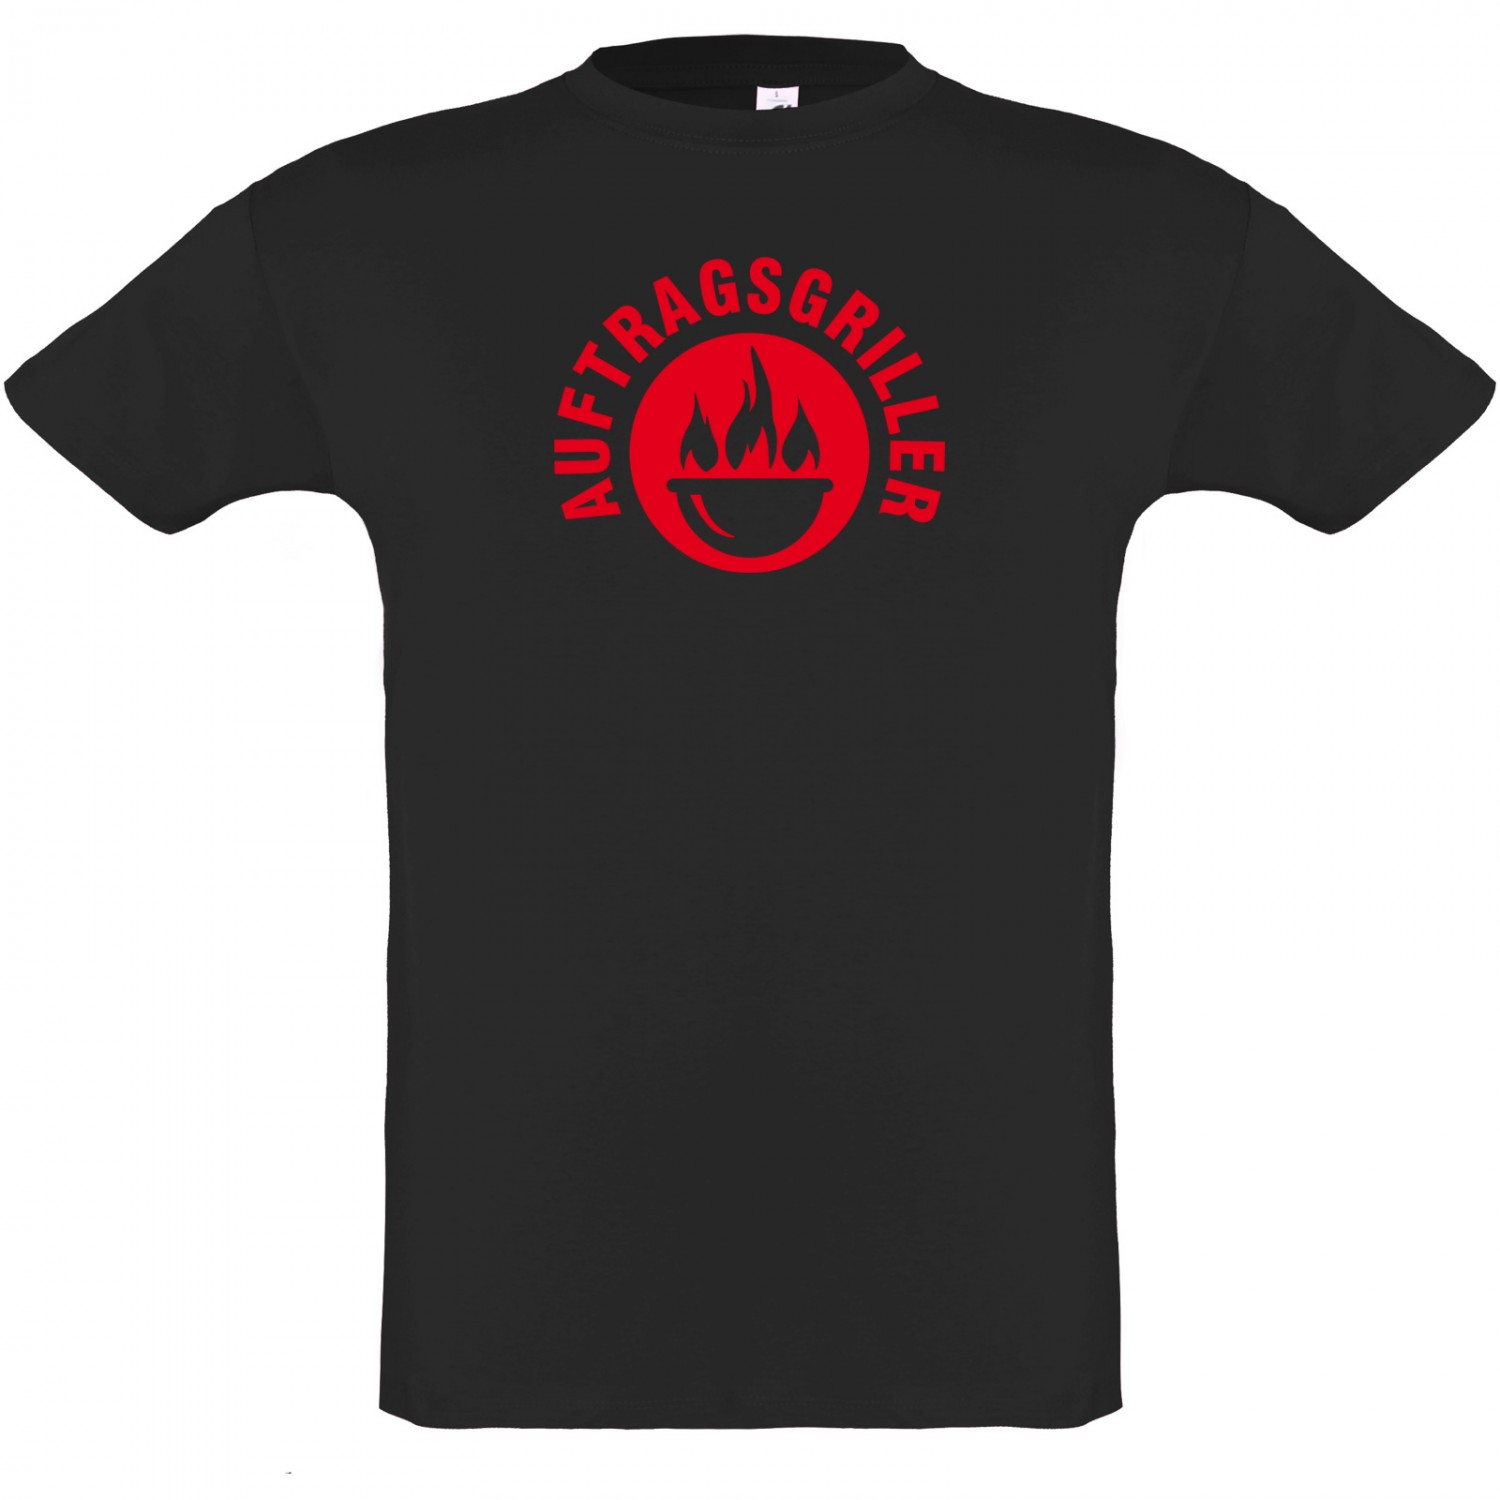 Auftragsgriller T-Shirt BBQ Grillen Shirt schwarz (Größe: M)